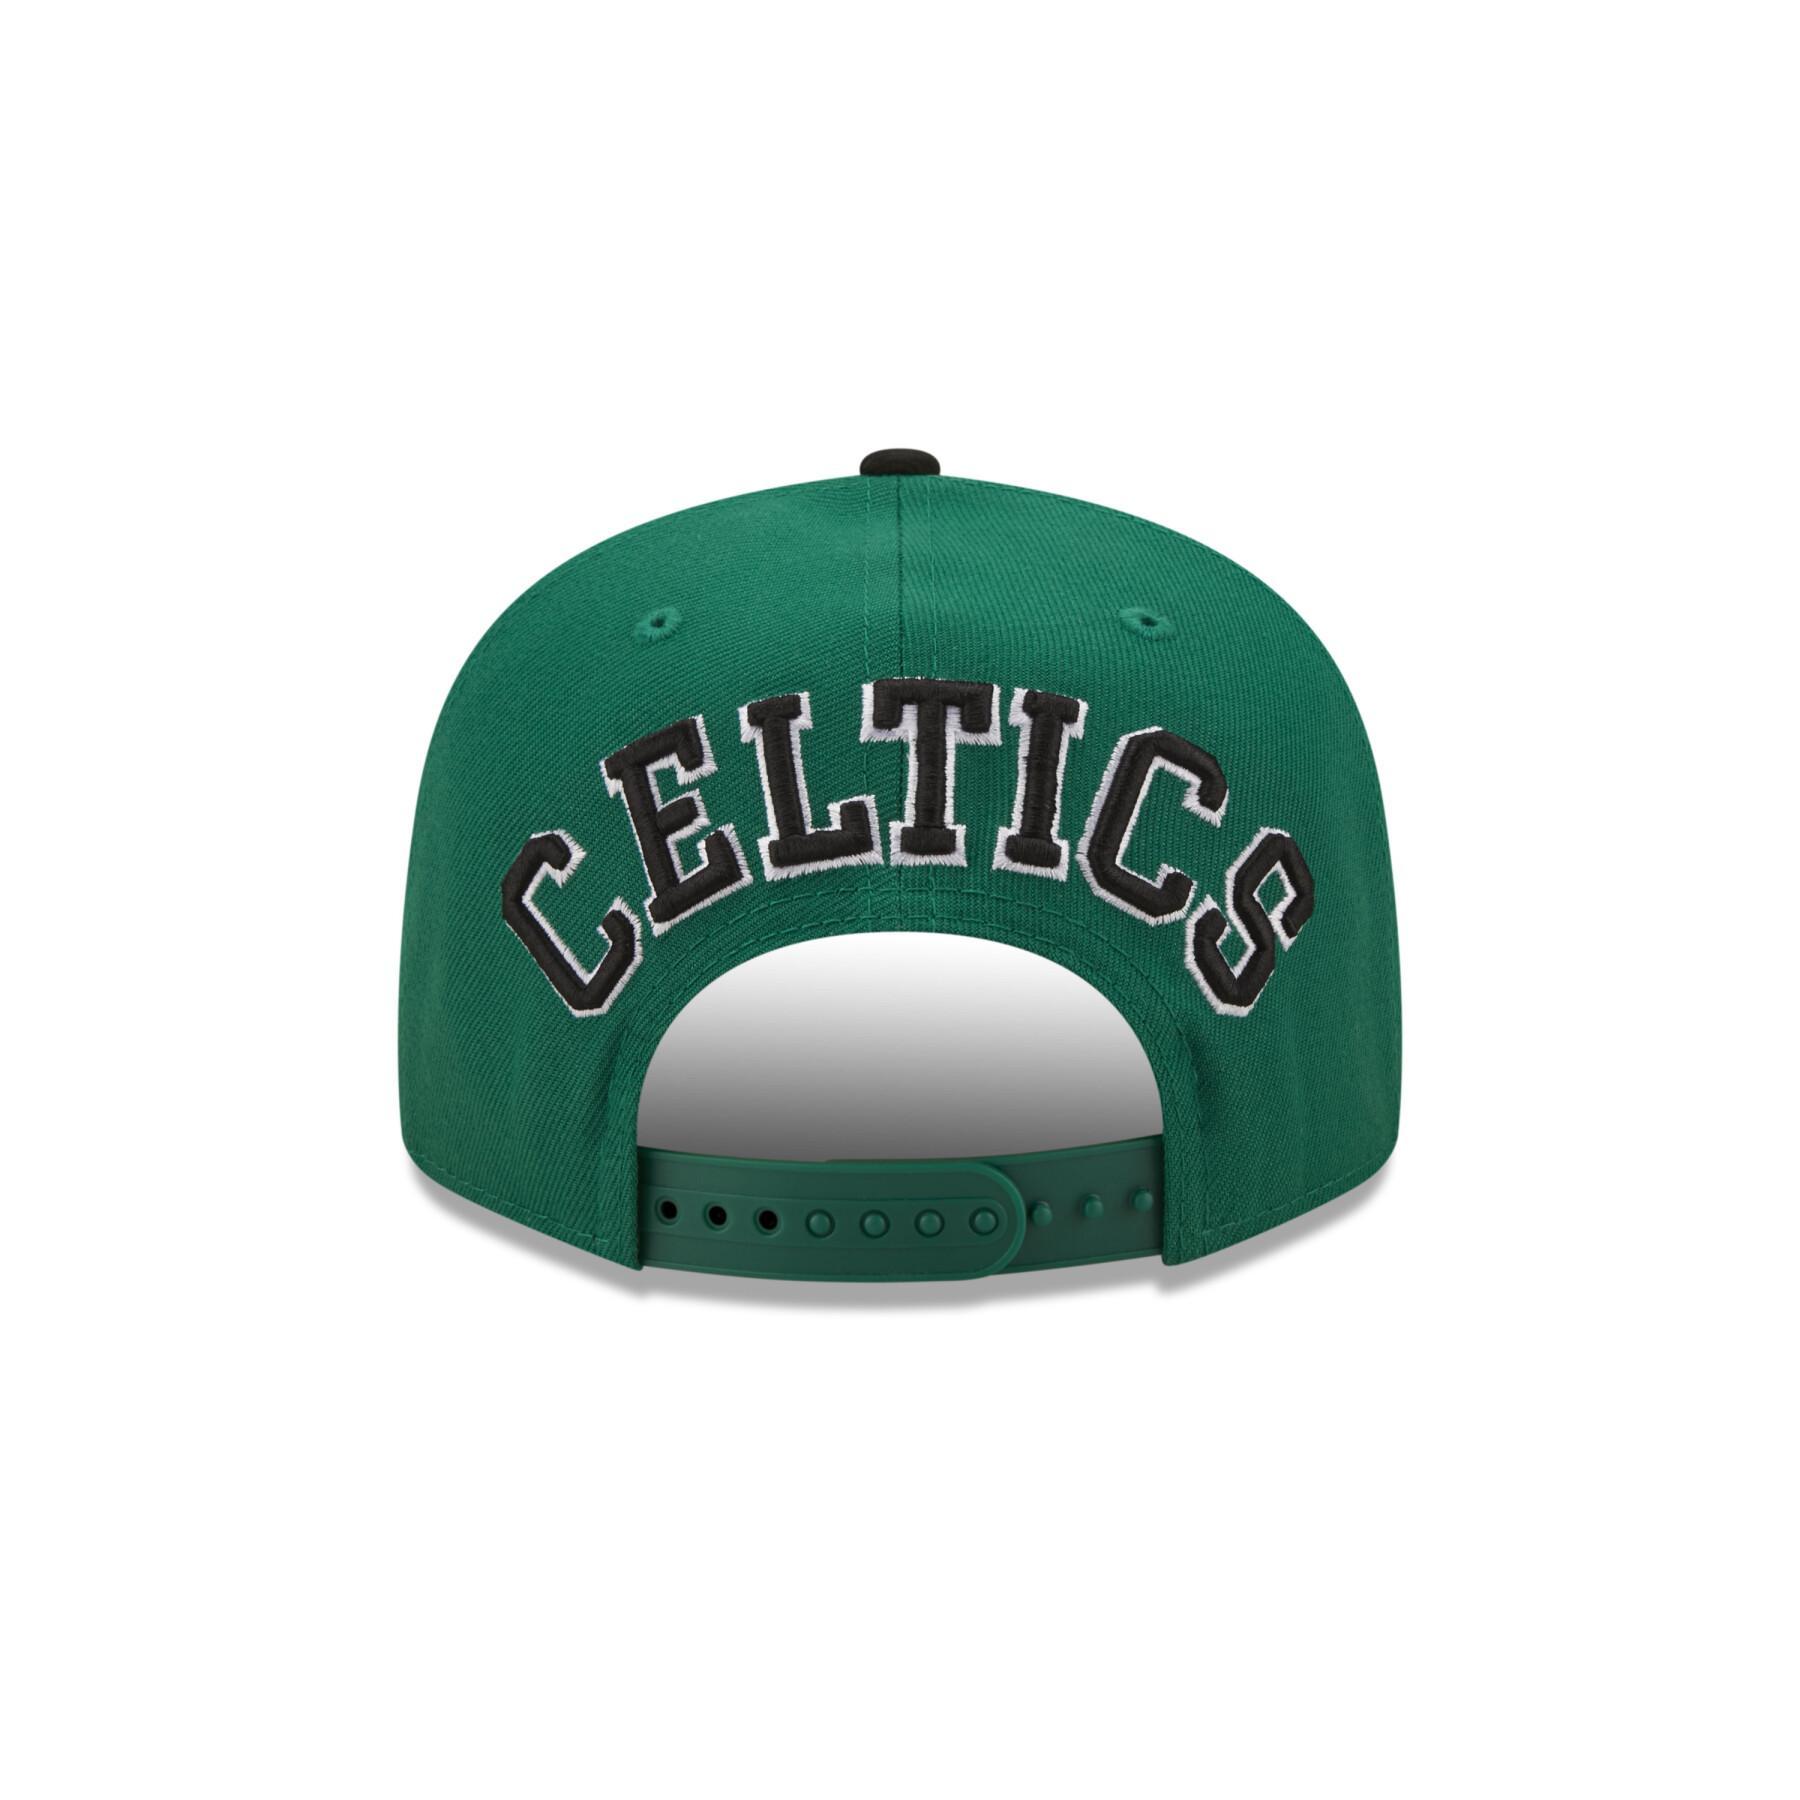 Mütze 9fifty Boston Celtics